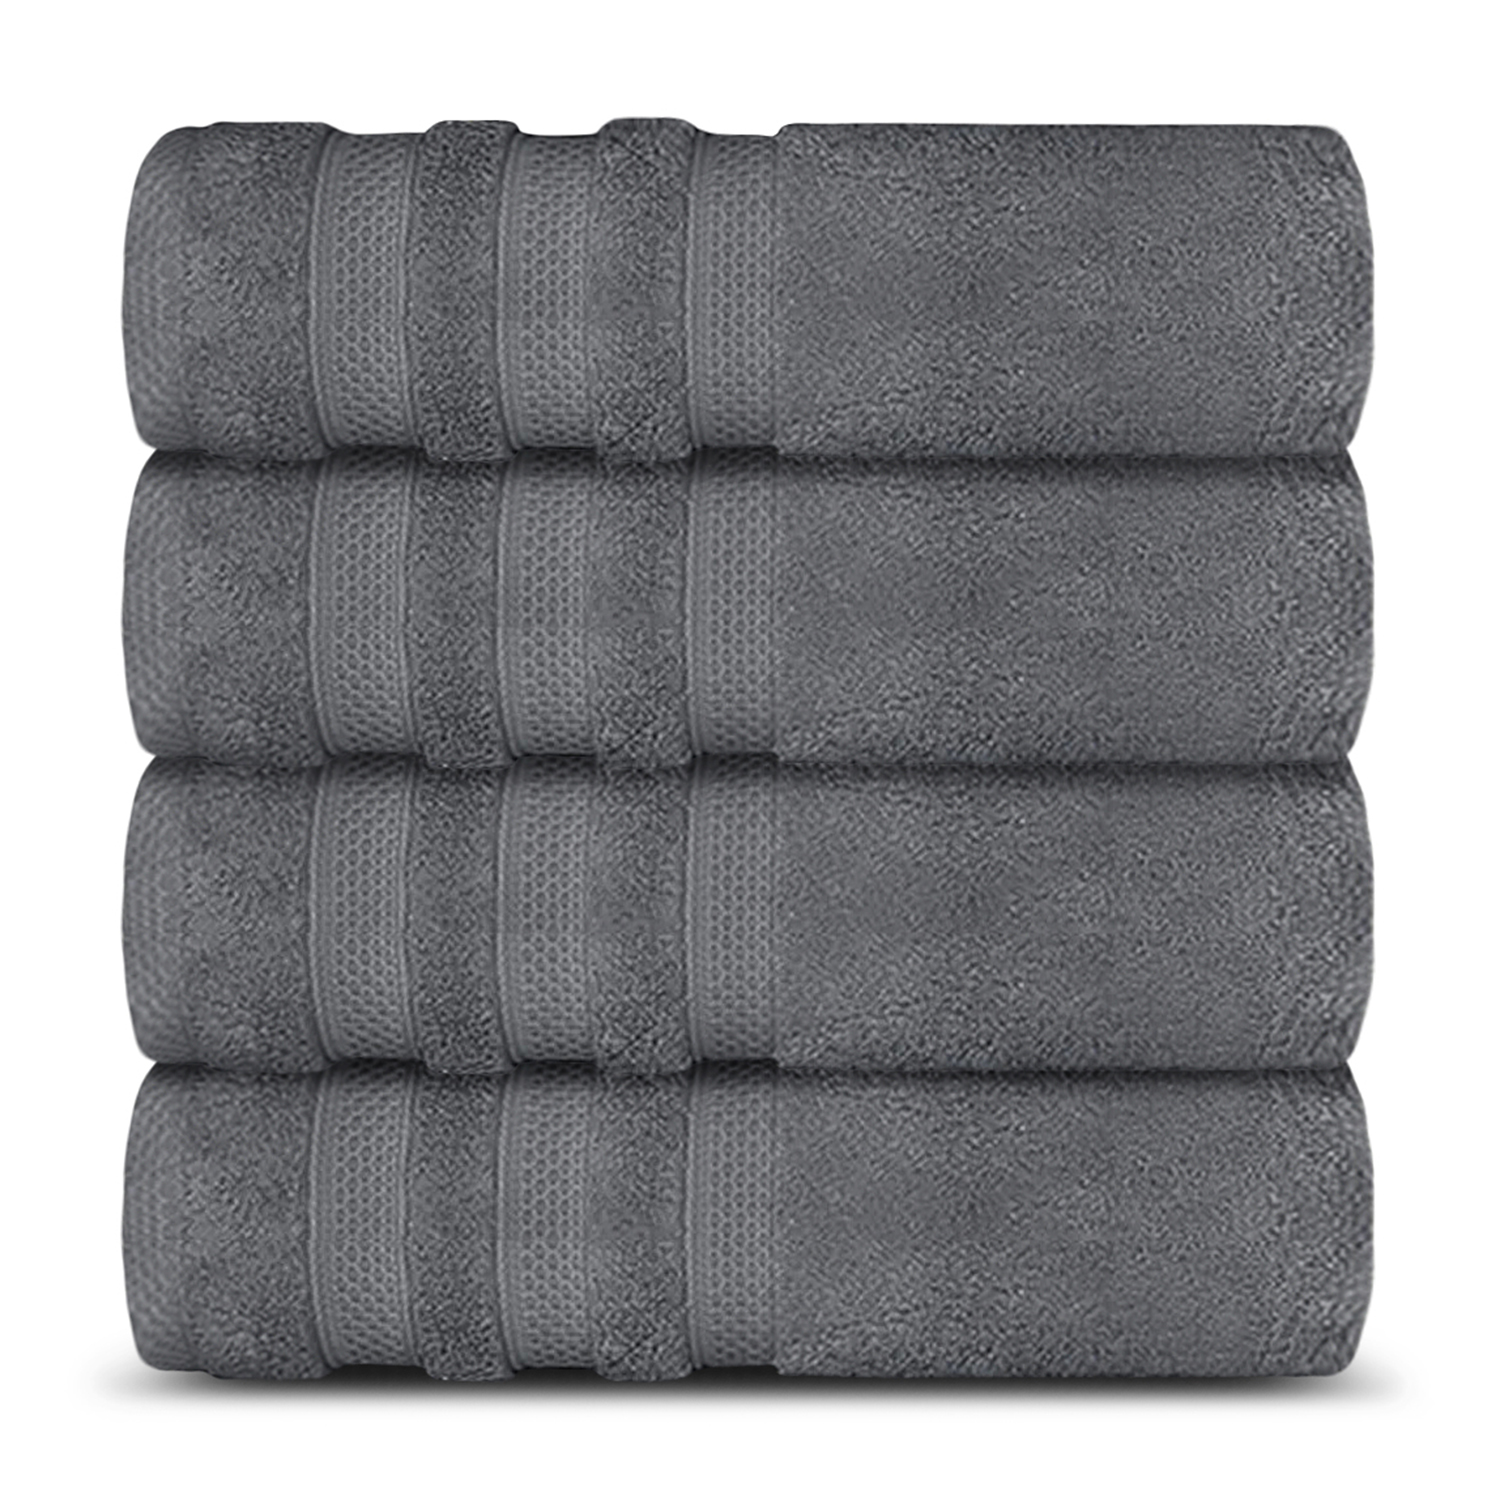 12 Piece 700GSM Towel Bale - 4 Face Cloths, 4 Hand Towels, 2 Bath